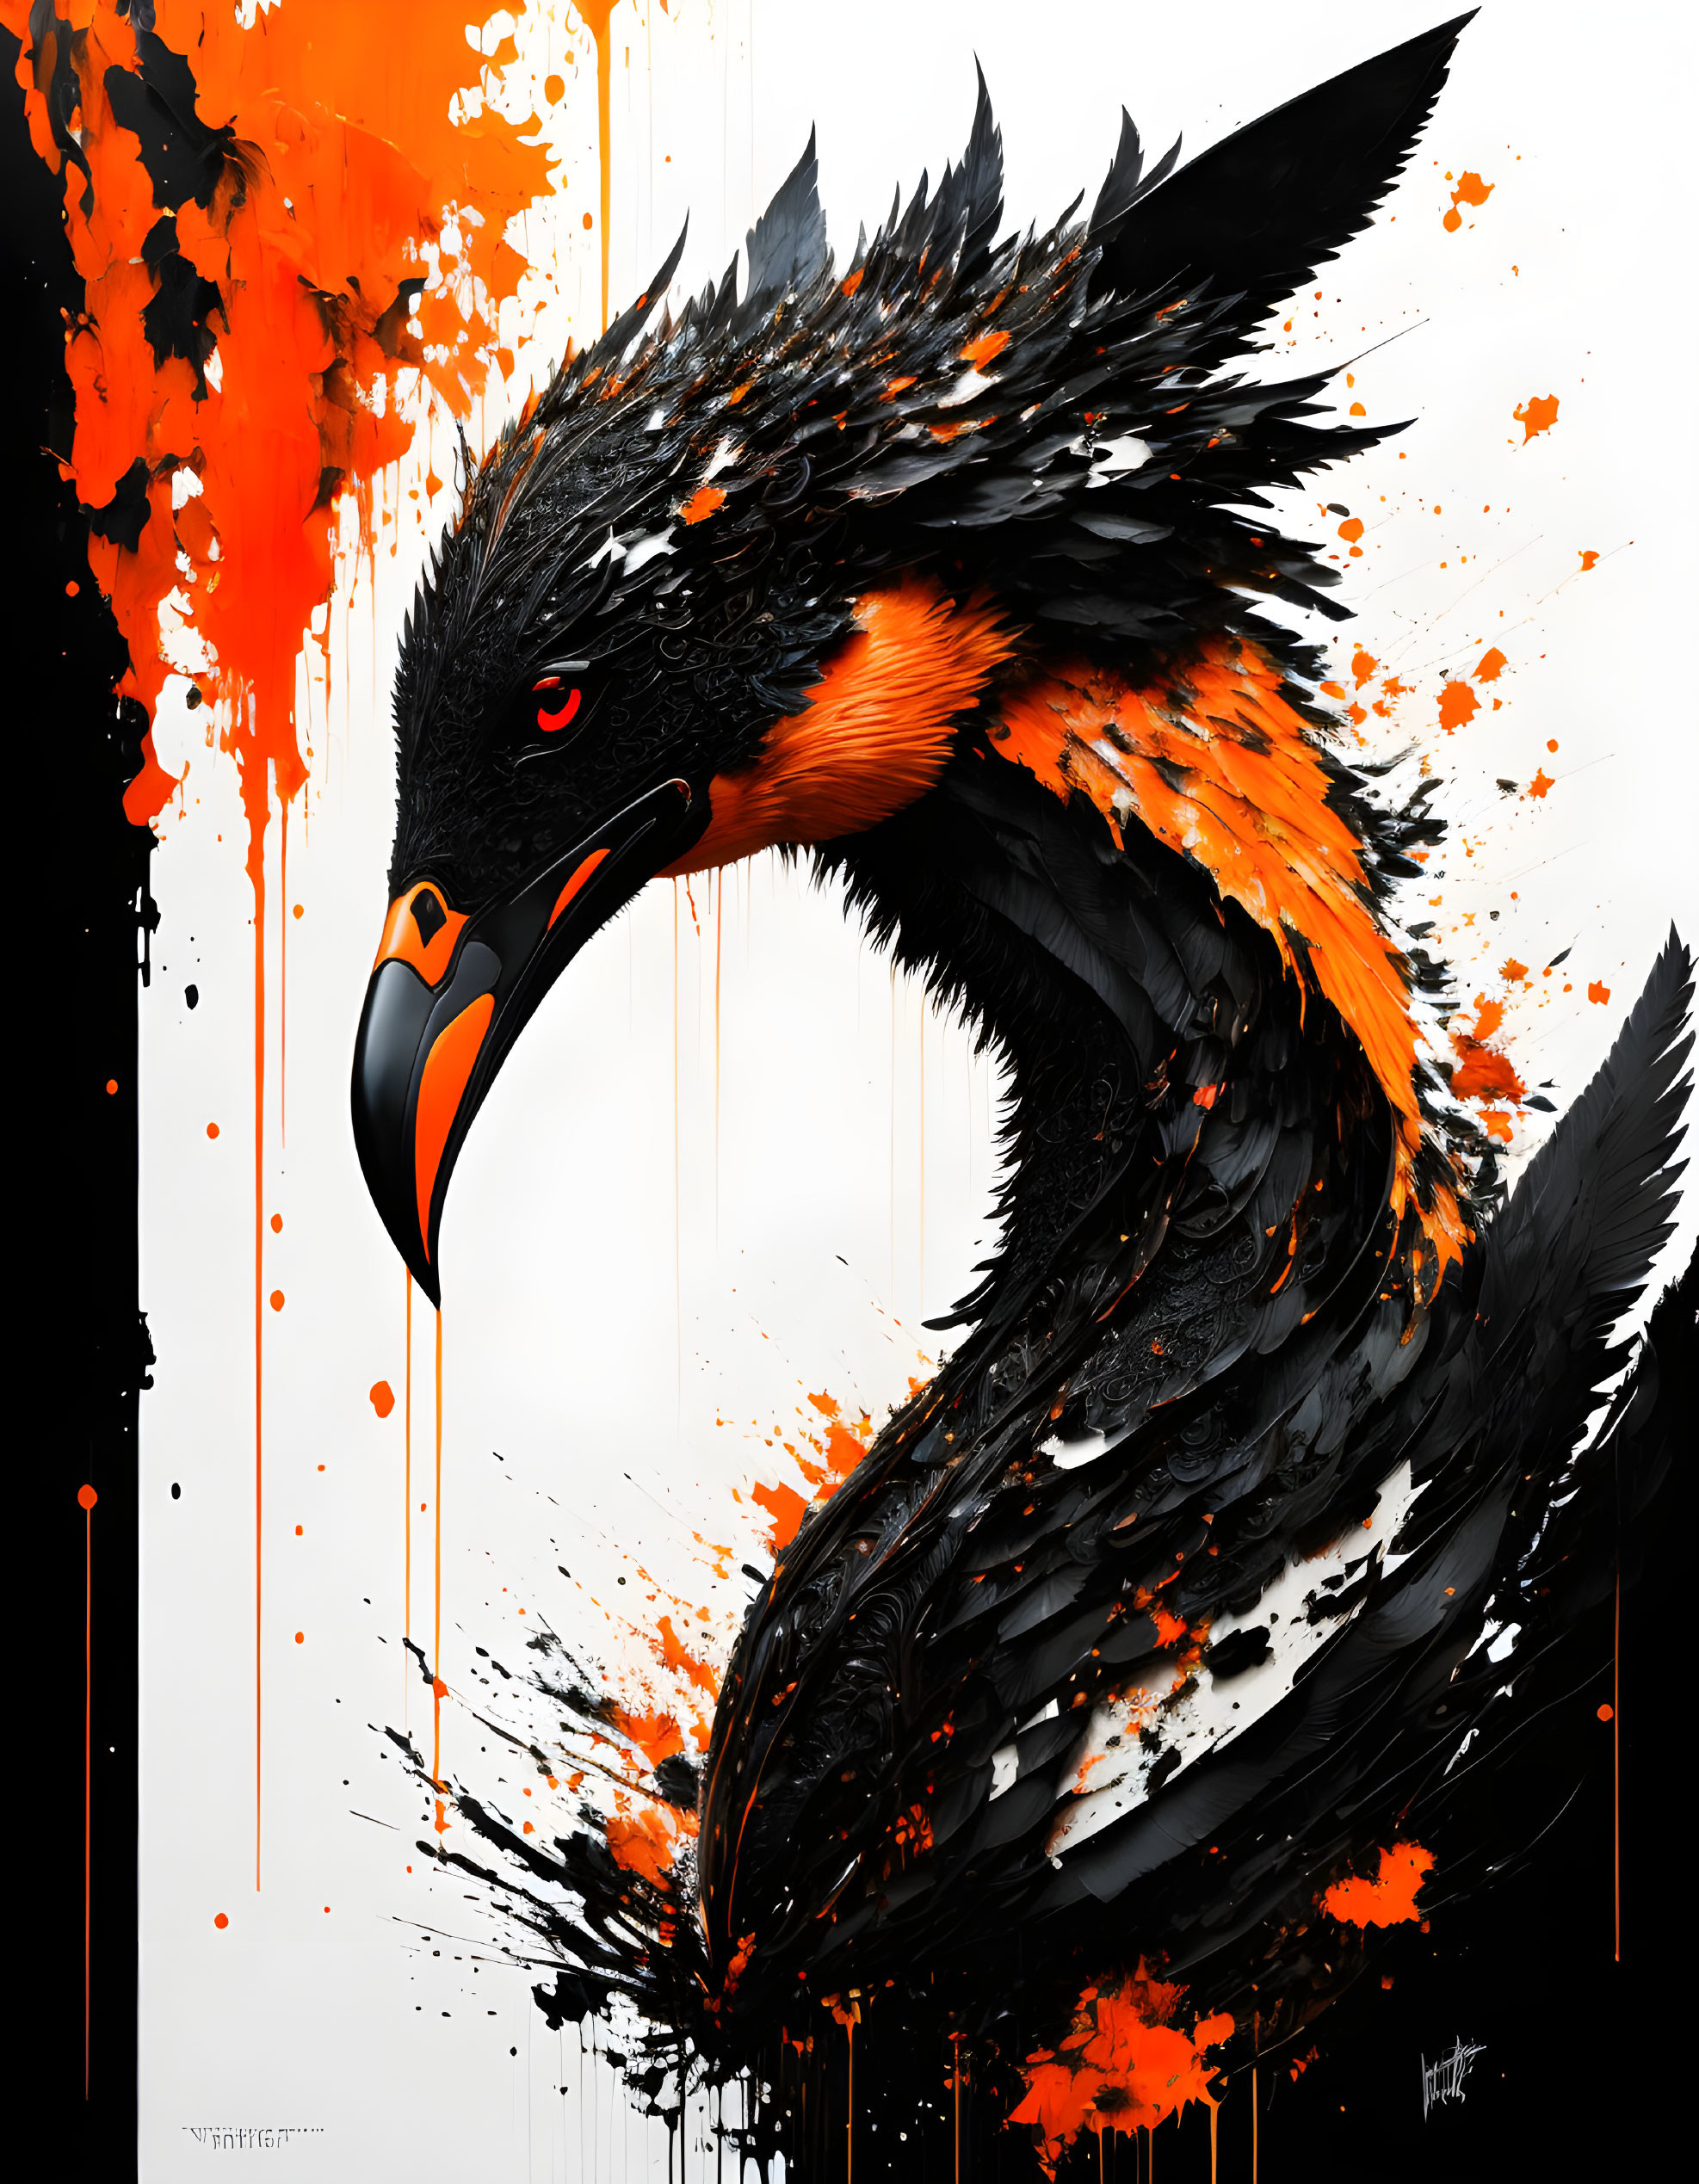 Stylized eagle with orange and black plumage on dark background